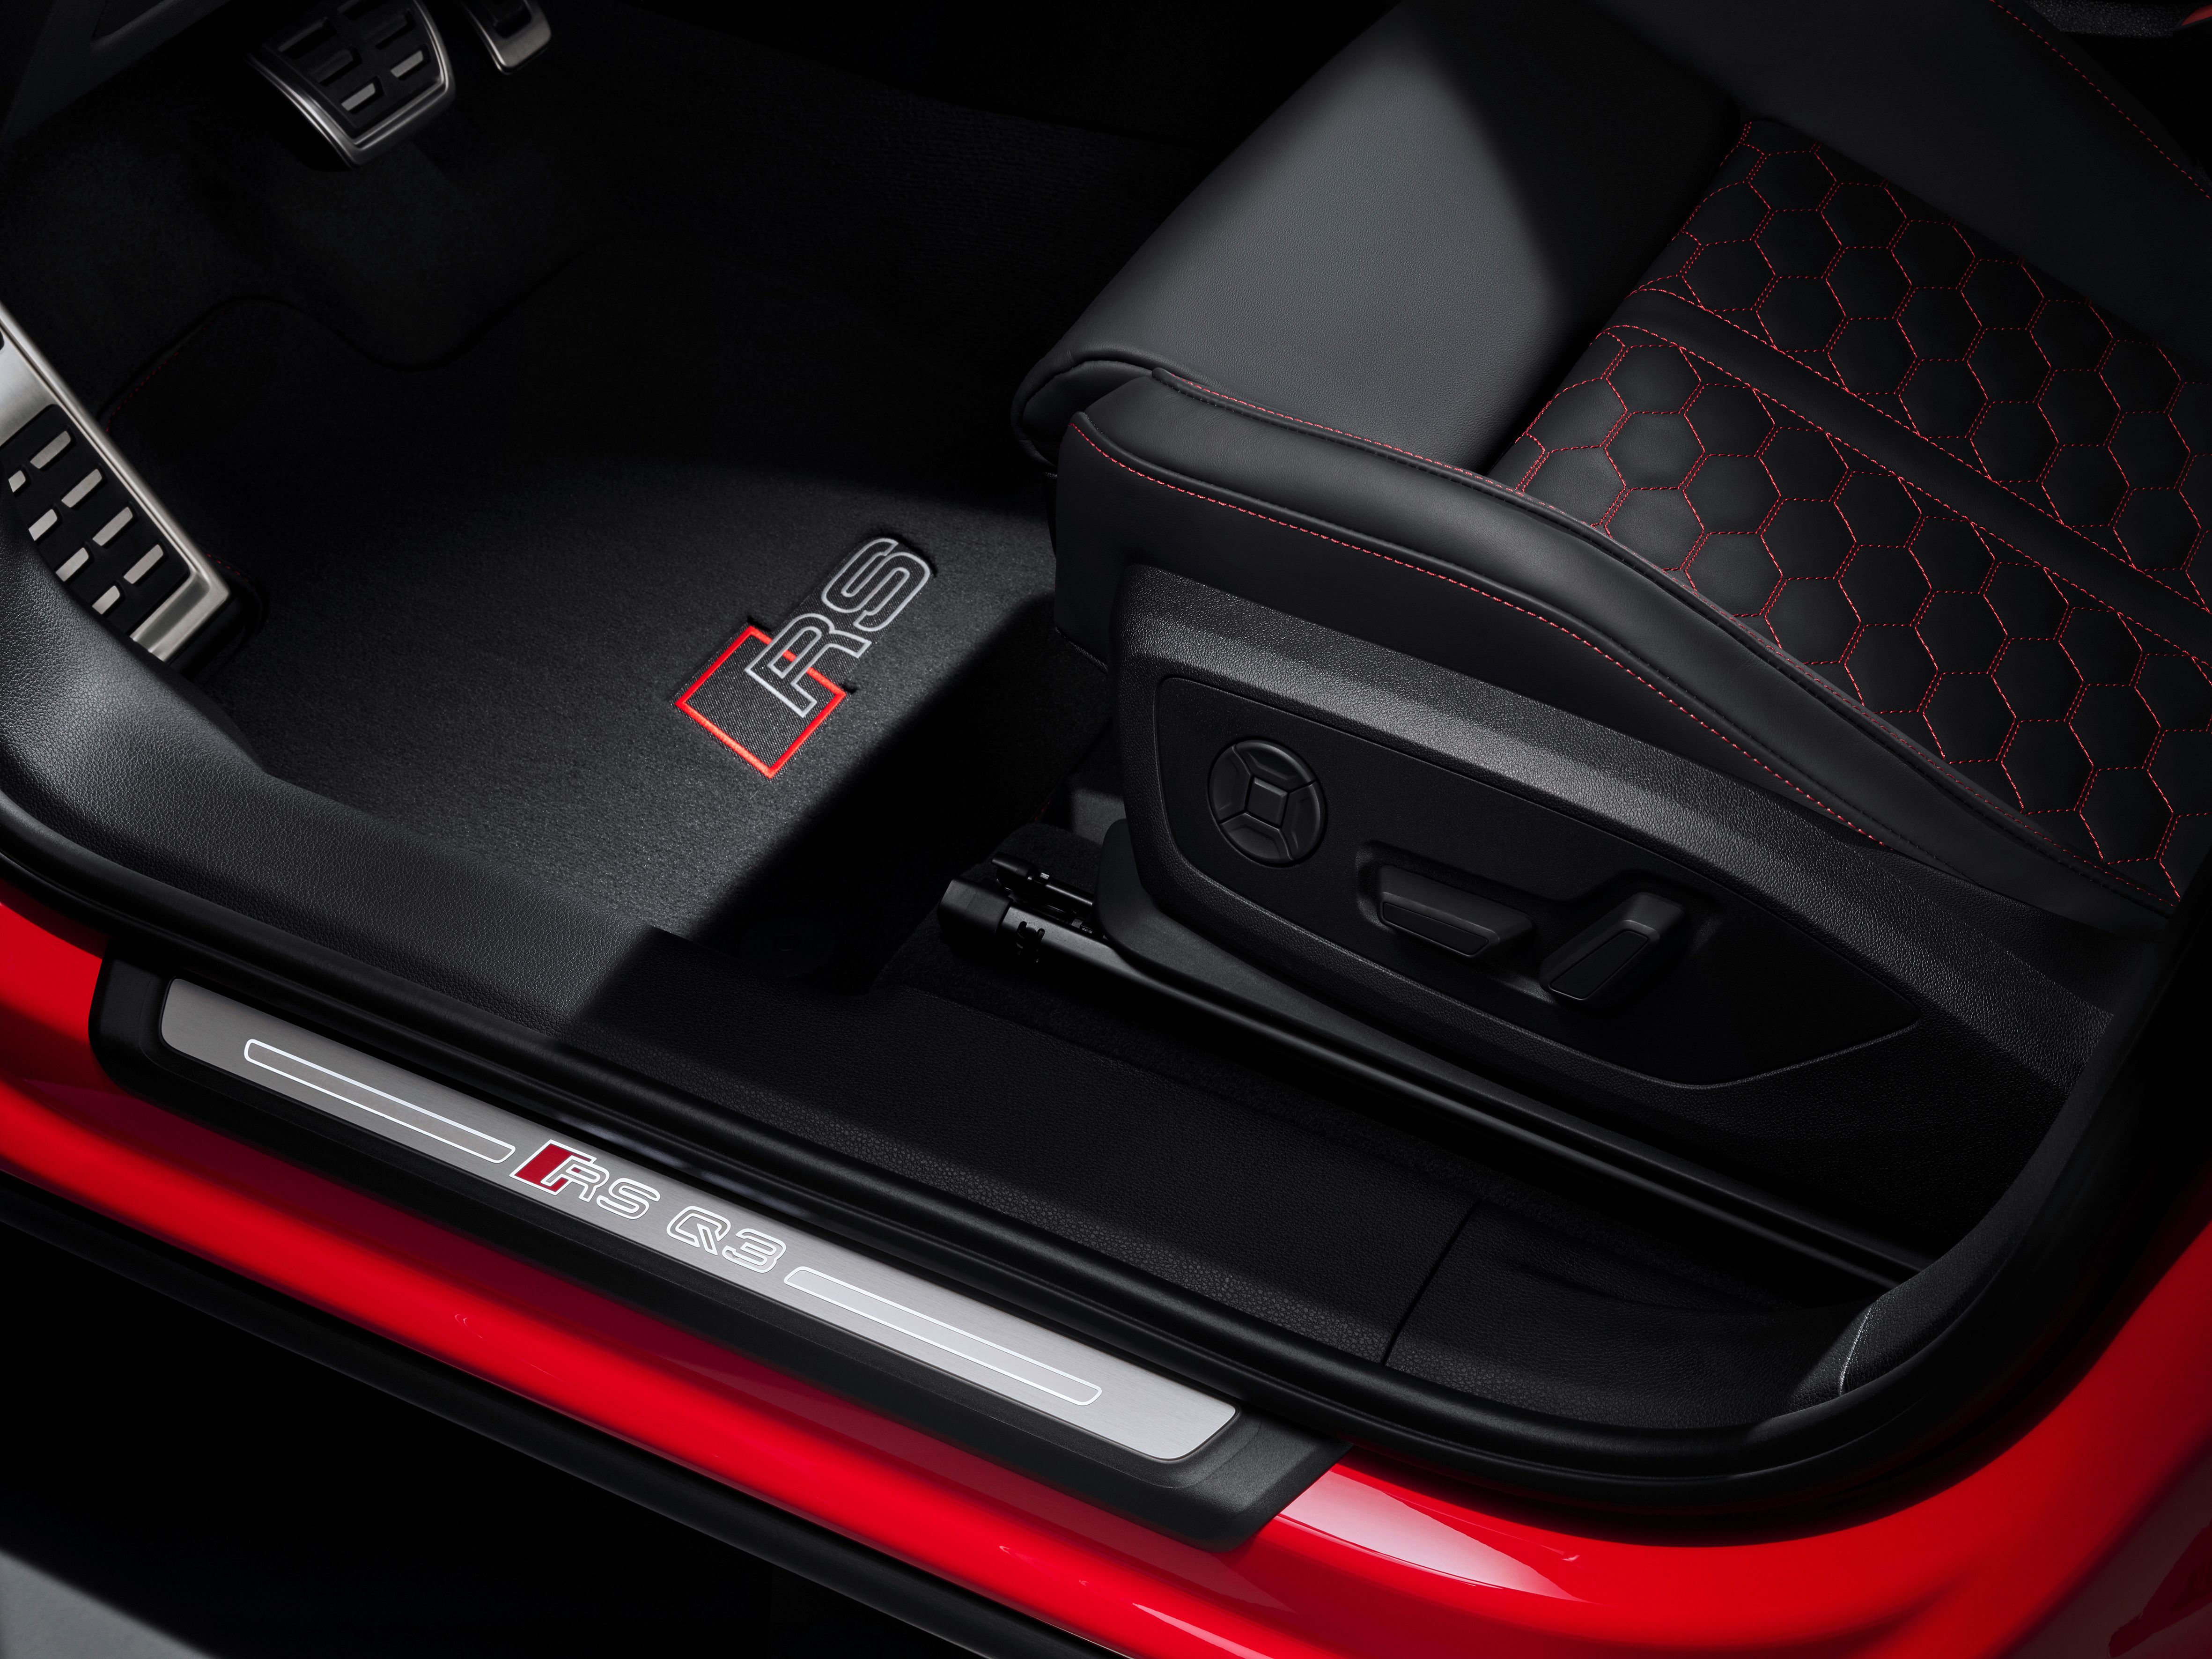 2020 Audi RS Q3